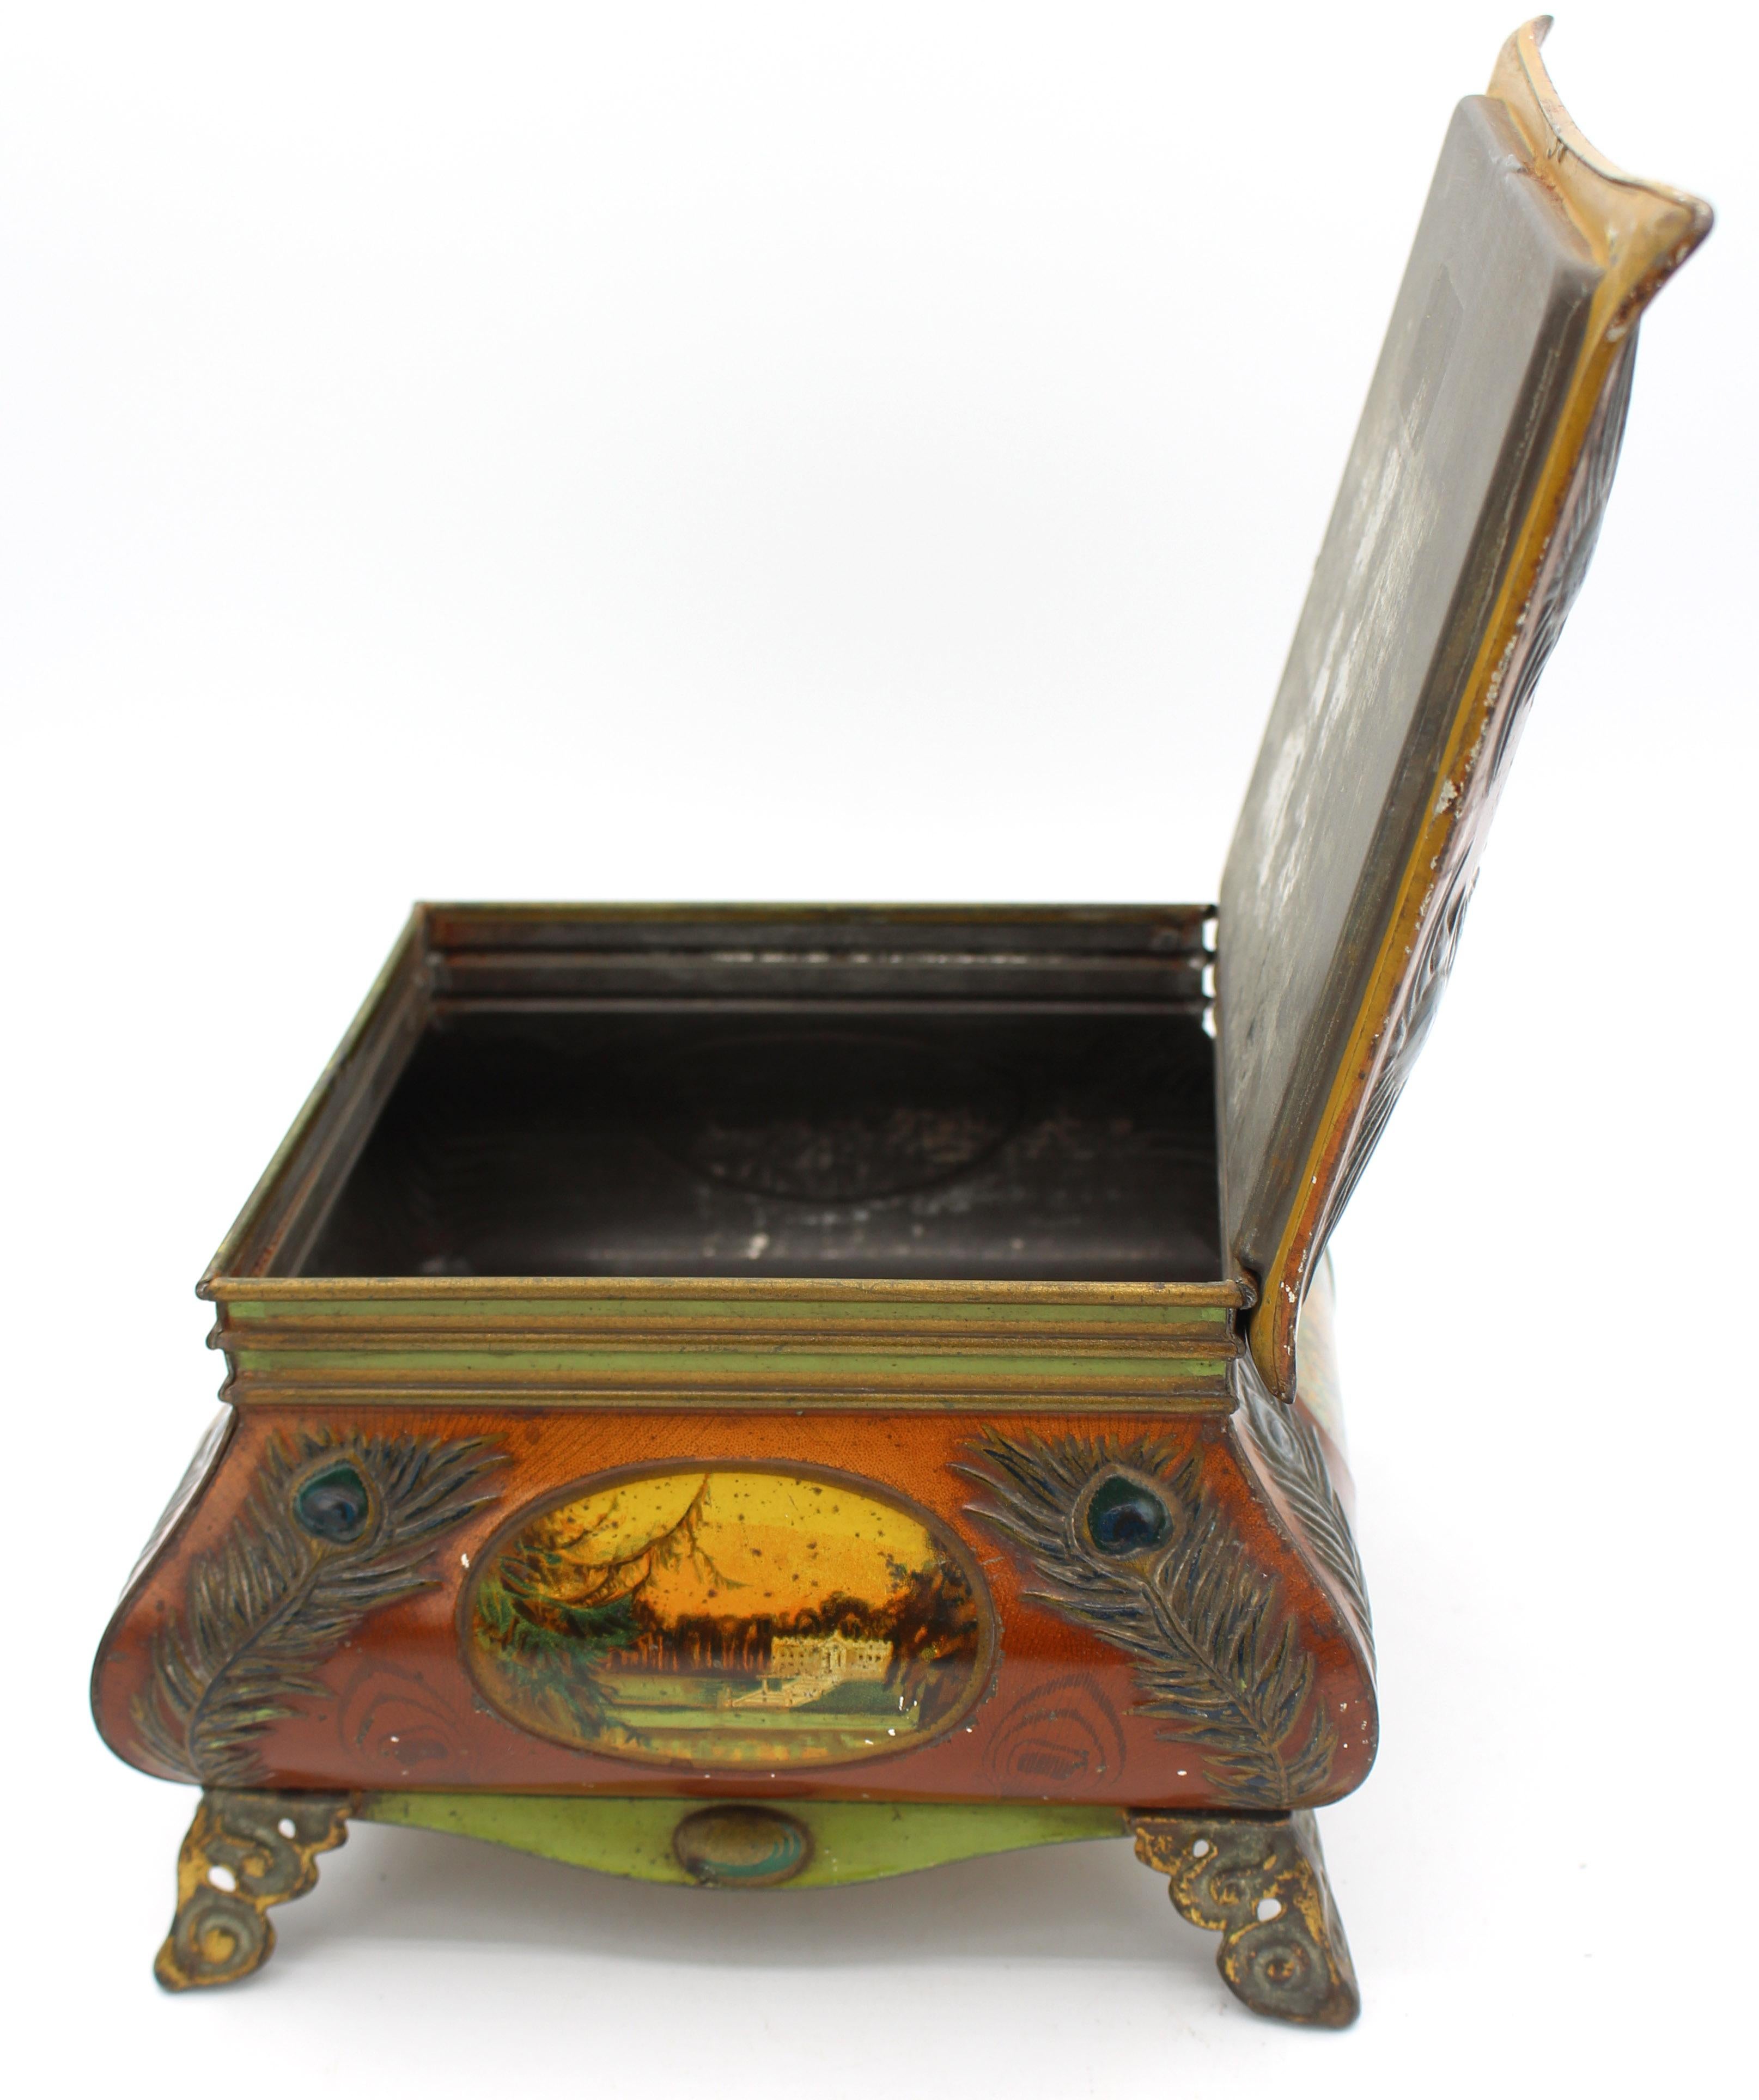 1913 jährliche Huntley & Palmers Tischplatte Box Keksdose. Kühn geschwungene Form - die Schachtel ist mit Pfauenfedern und romantischen Schultafeln verziert. Auf verschnörkelten Füßen stehend. Volles & extravagantes Huntley & Palmers Abzeichen auf